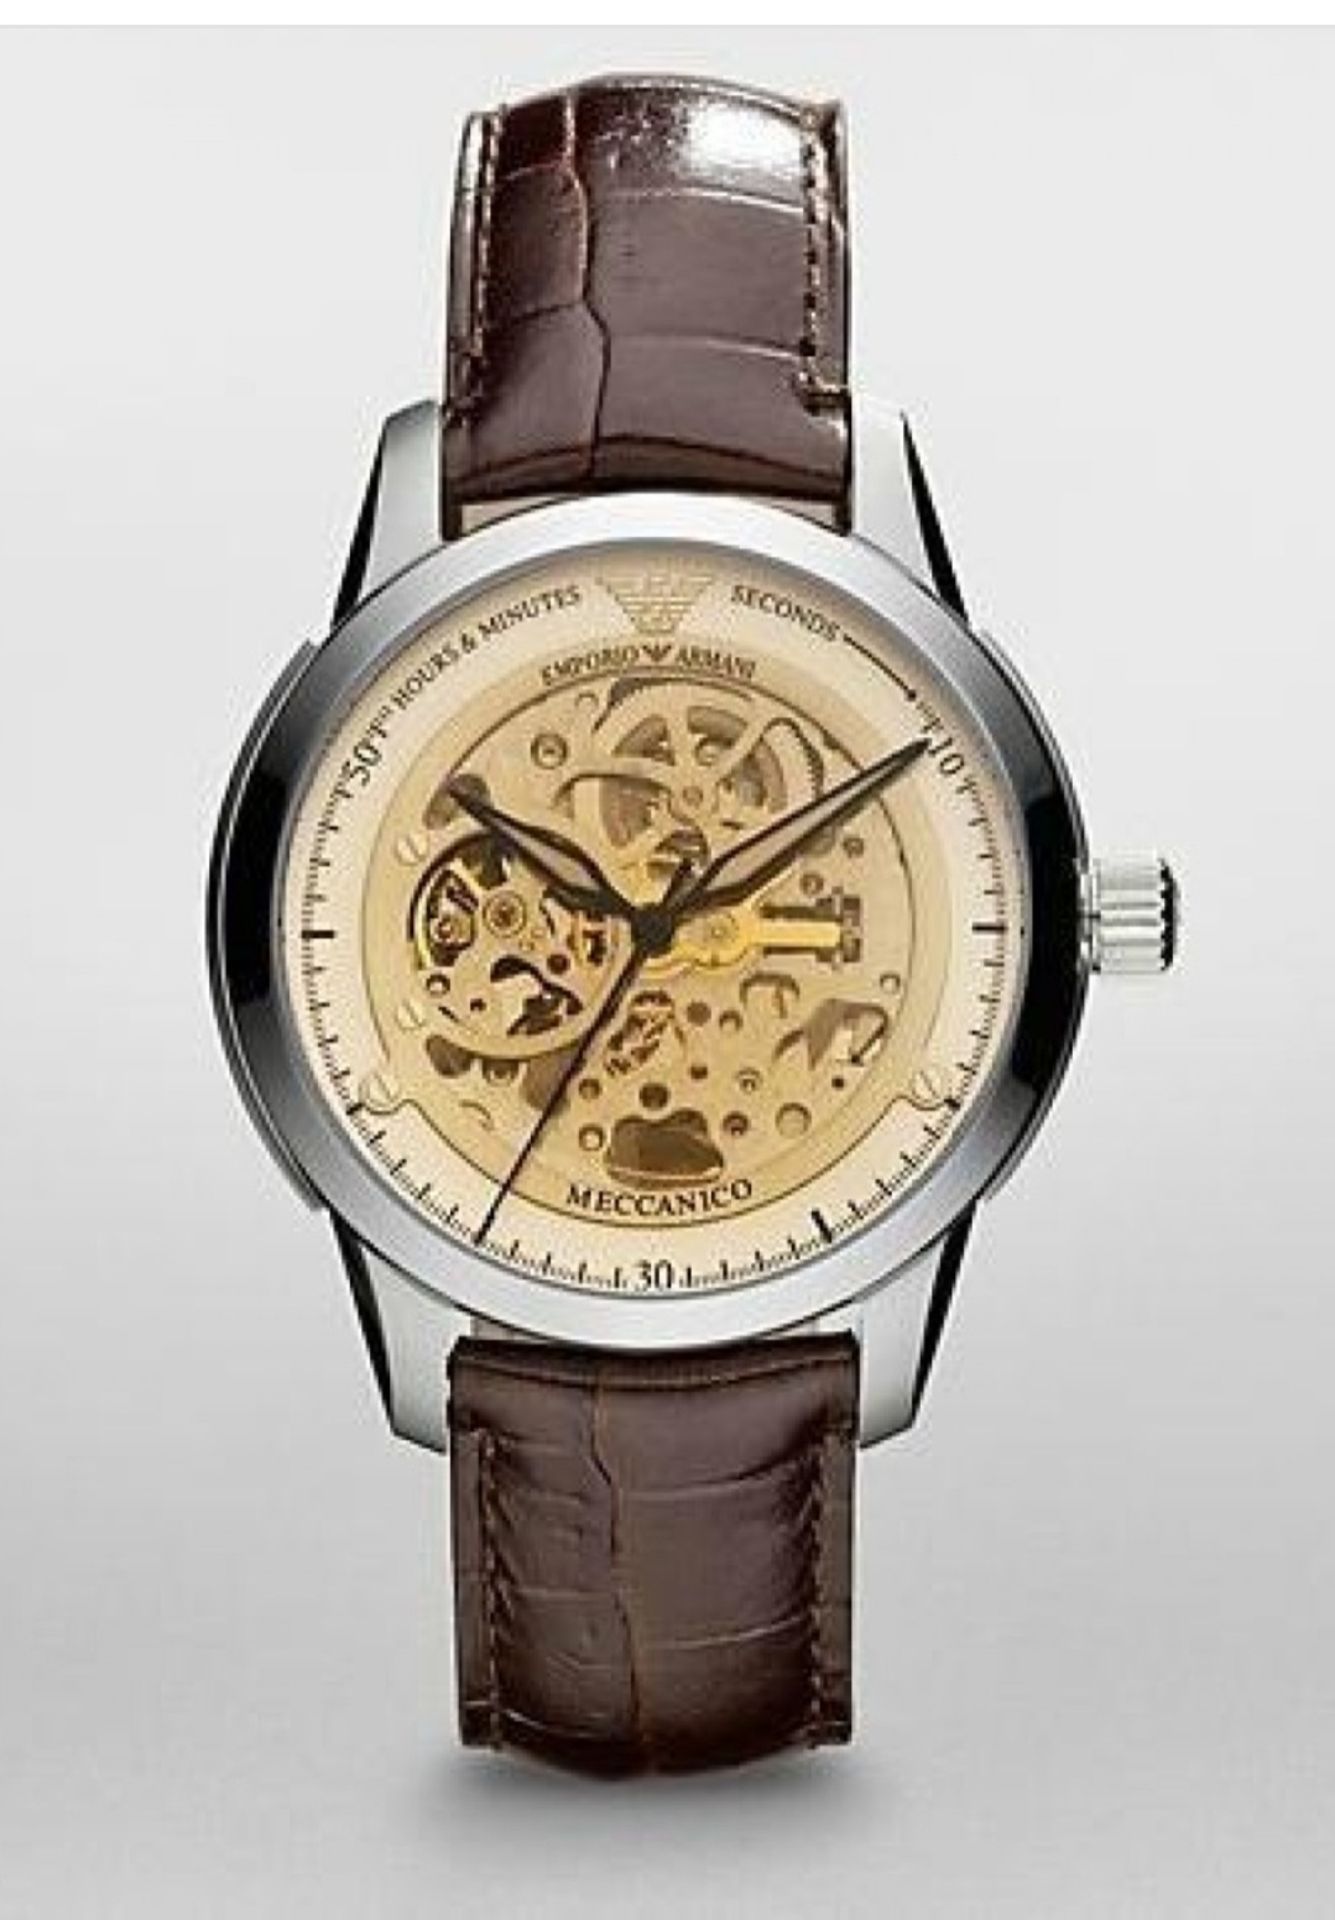 Emporio Armani A4627 Men's Meccanico Brown Leather Strap Watch - Image 2 of 4